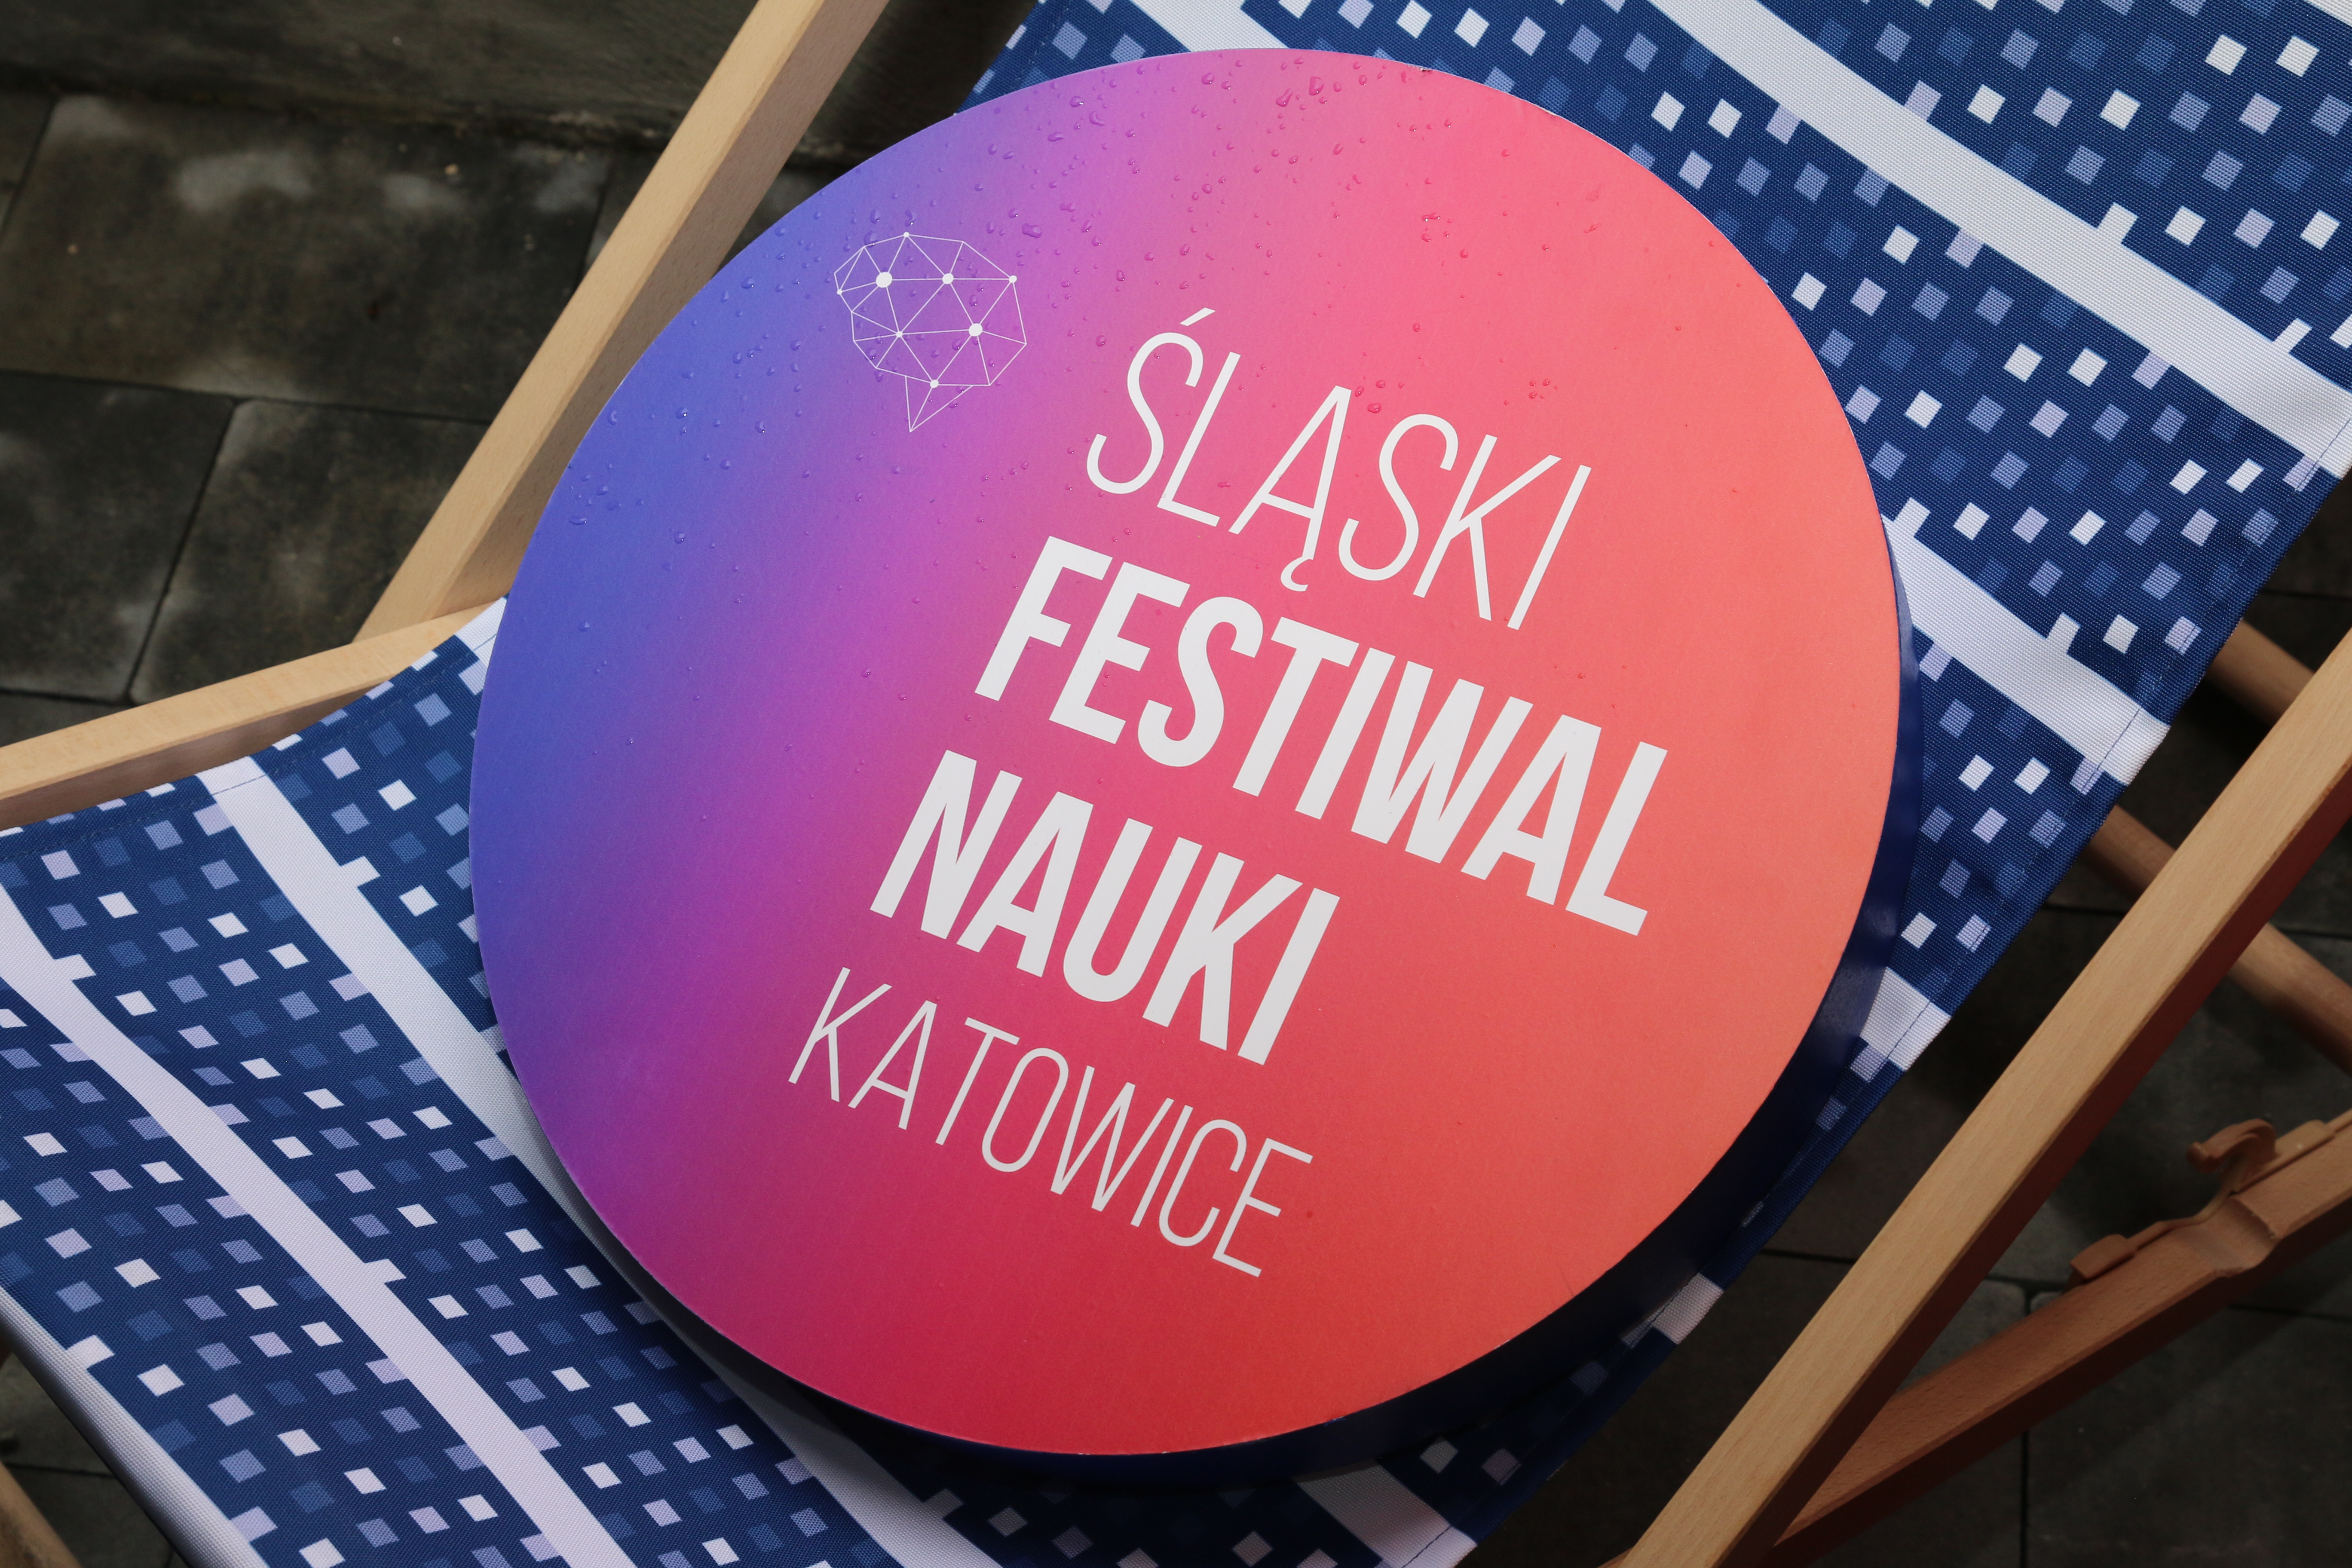 Śląski Festiwal Nauki KATOWICE